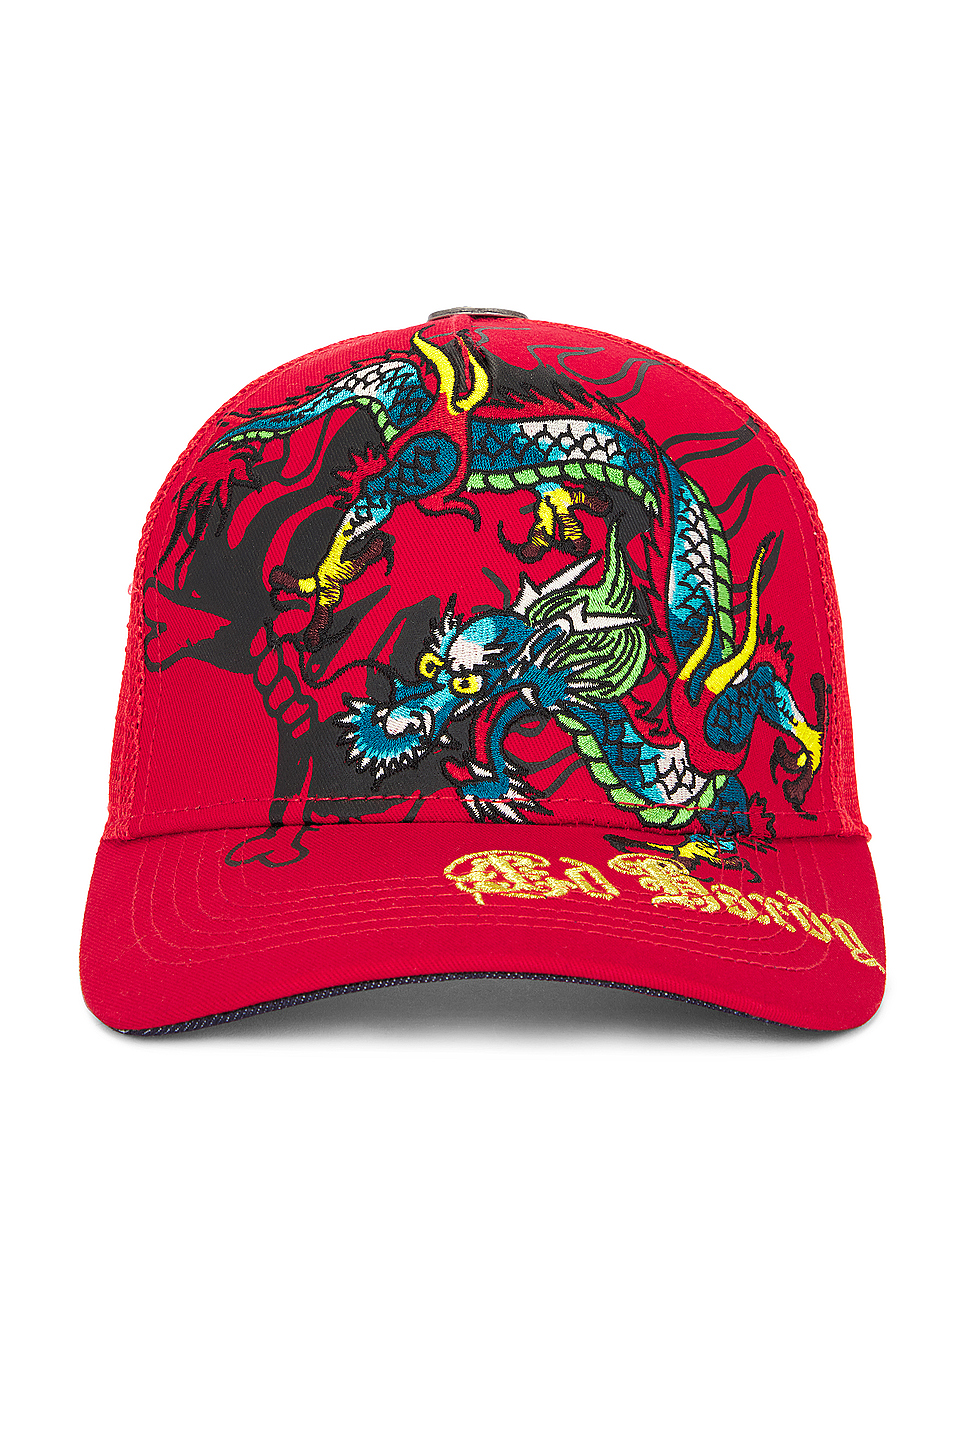 Ed Hardy Dragon Trucker Hat in Red